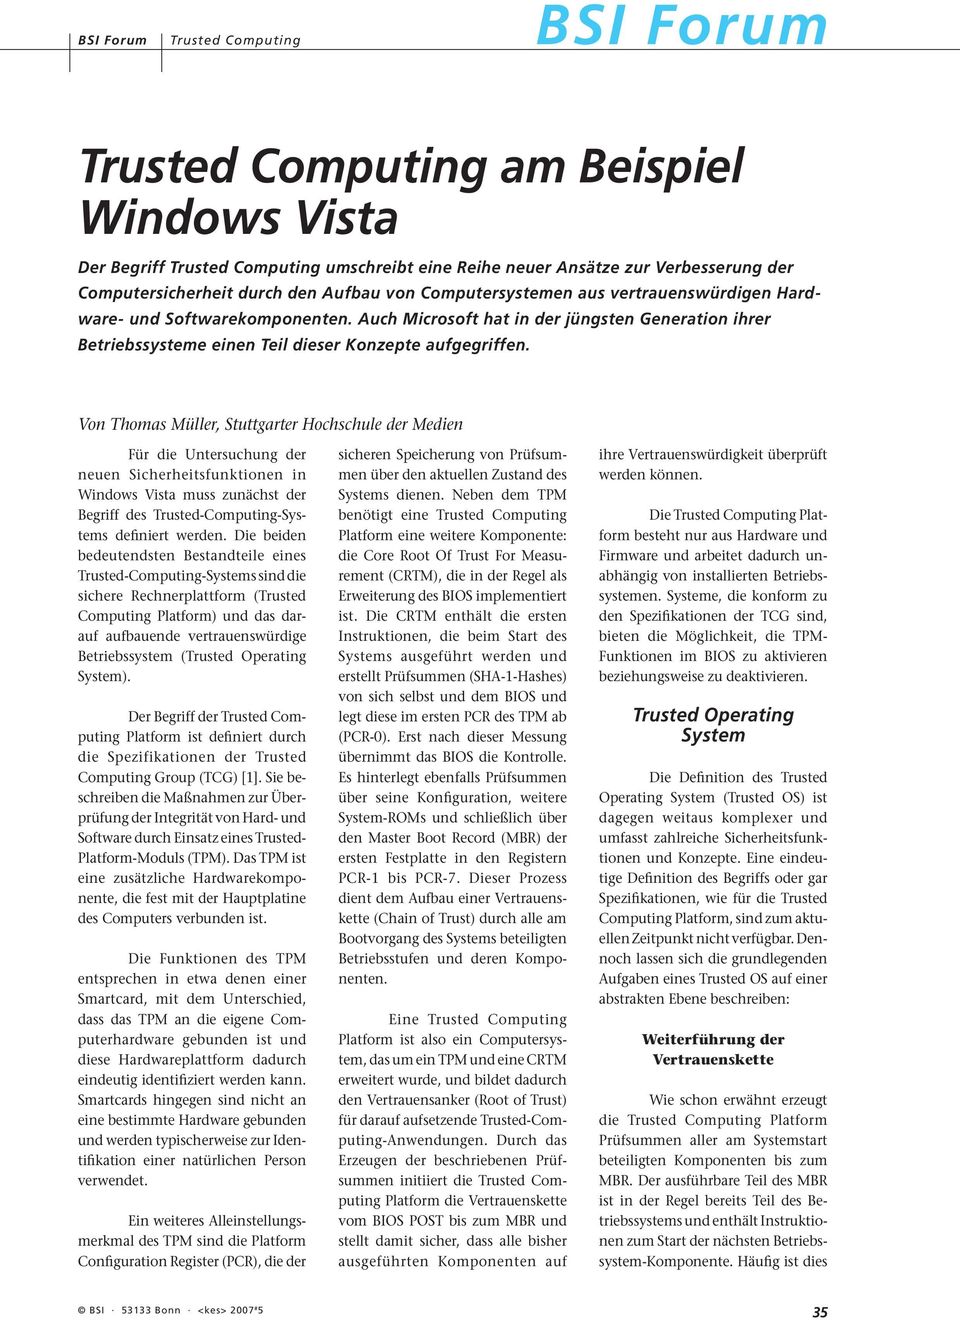 Von Thomas Müller, Stuttgarter Hochschule der Medien Für die Untersuchung der neuen Sicherheitsfunktionen in Windows Vista muss zunächst der Begriff des Trusted-Computing-Systems definiert werden.